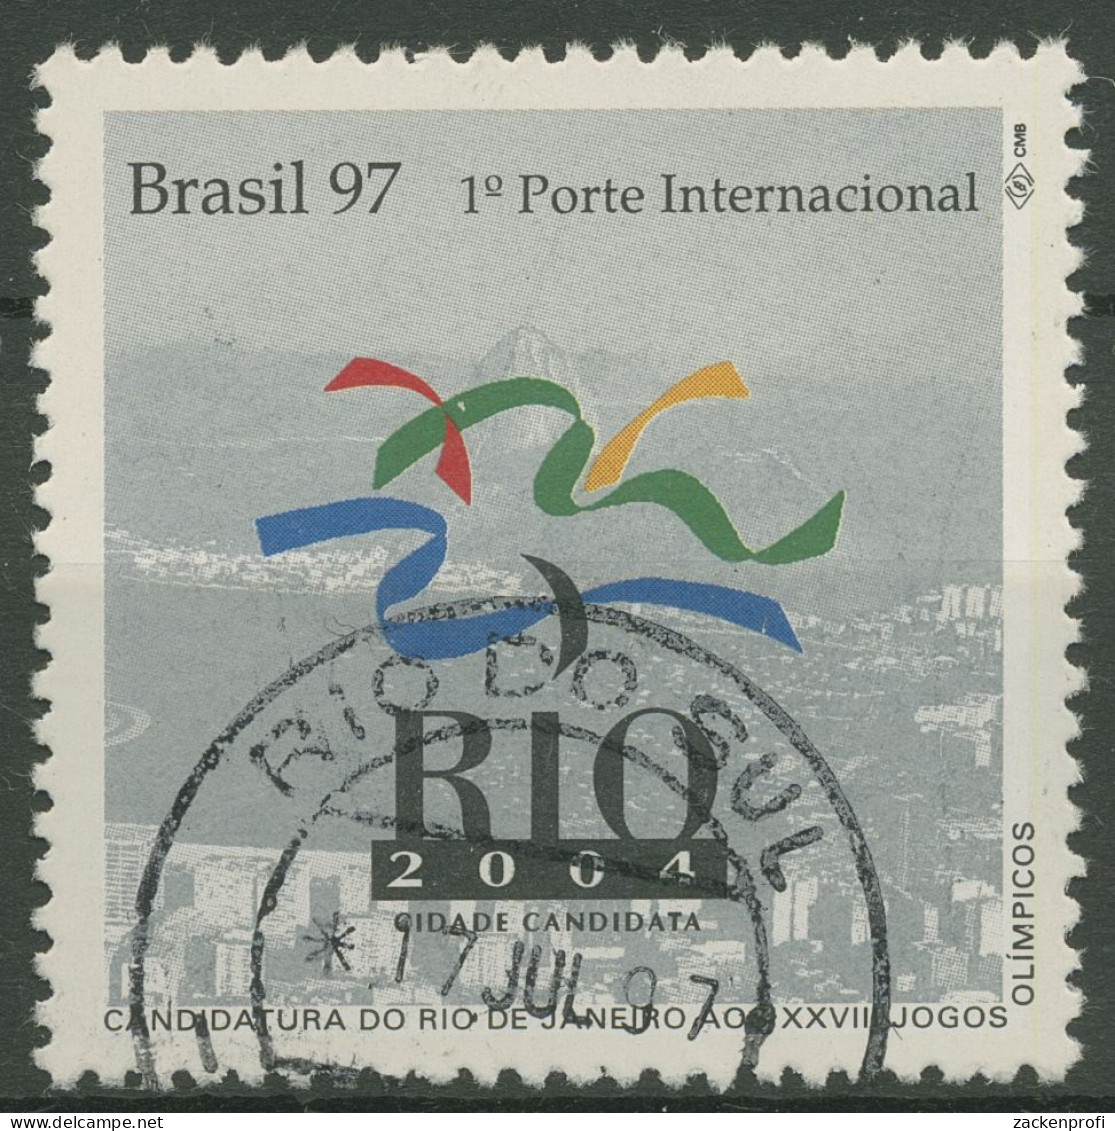 Brasilien 1997 Bewerbung Für 2004 Olympische Sommerspiele 2734 Gestempelt - Used Stamps